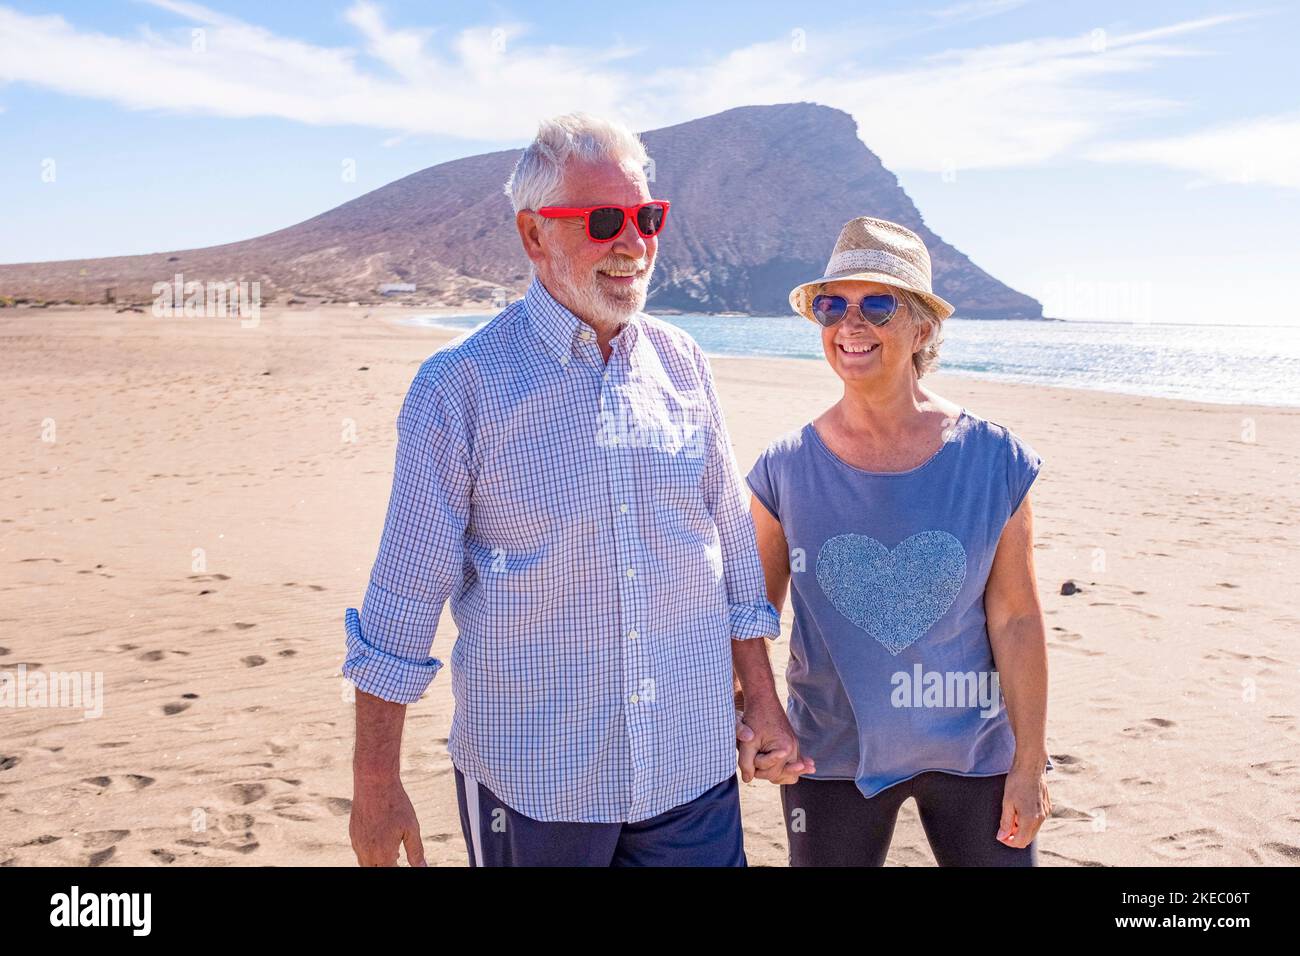 Ein paar ältere Leute, die Spaß haben, gemeinsam auf dem Sand des Strandes zu spazieren und ihren Urlaub zu genießen oder mit dem Meer oder dem Meer im Hintergrund in die Natur zu reisen - zwei Senioren, die sich verliebt haben, Spaß zu haben Stockfoto